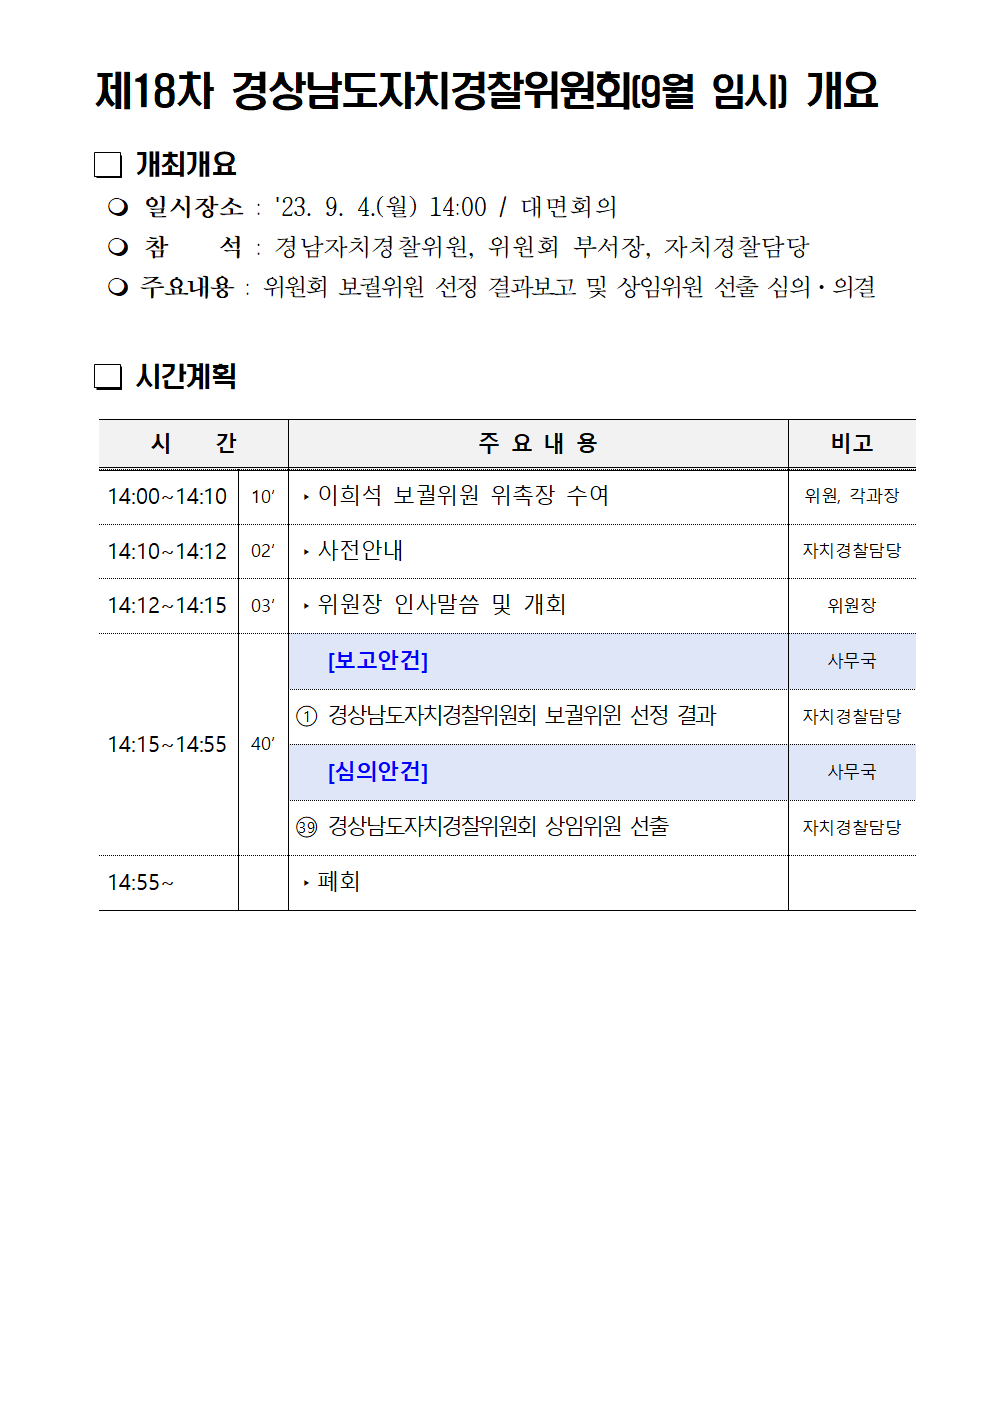 23년 제18차 경상남도자치경찰위원회(9월 임시) 개최 개요(블로그)의 파일 이미지